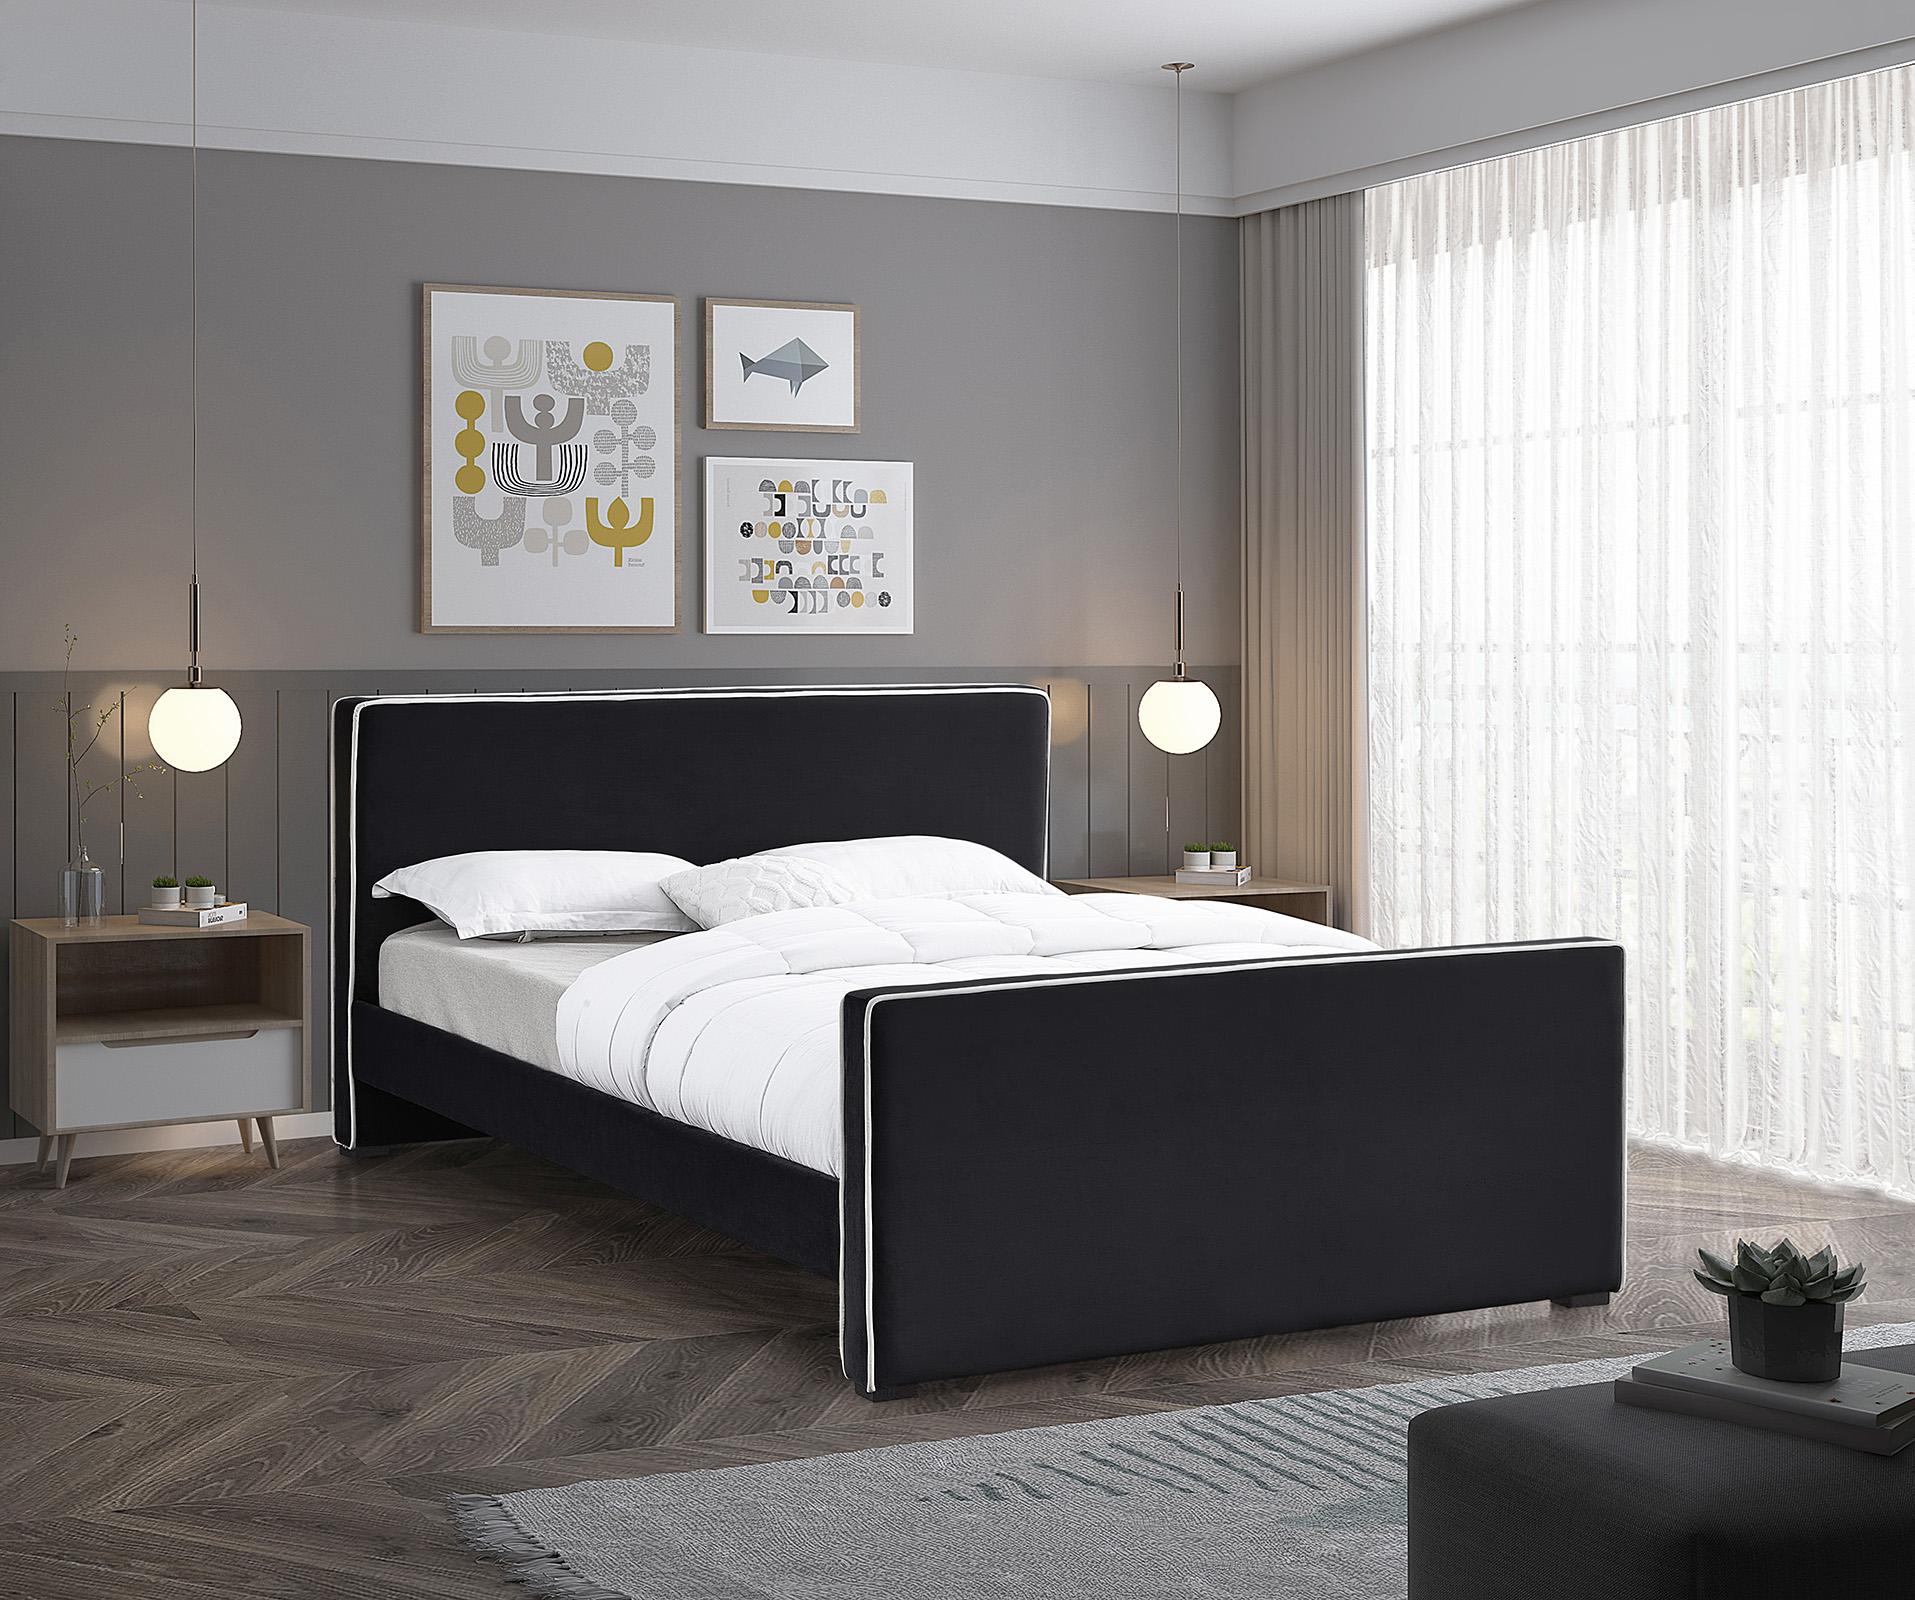 

    
Meridian Furniture DILLARD DillardBlack-F Platform Bed Black DillardBlack-F
